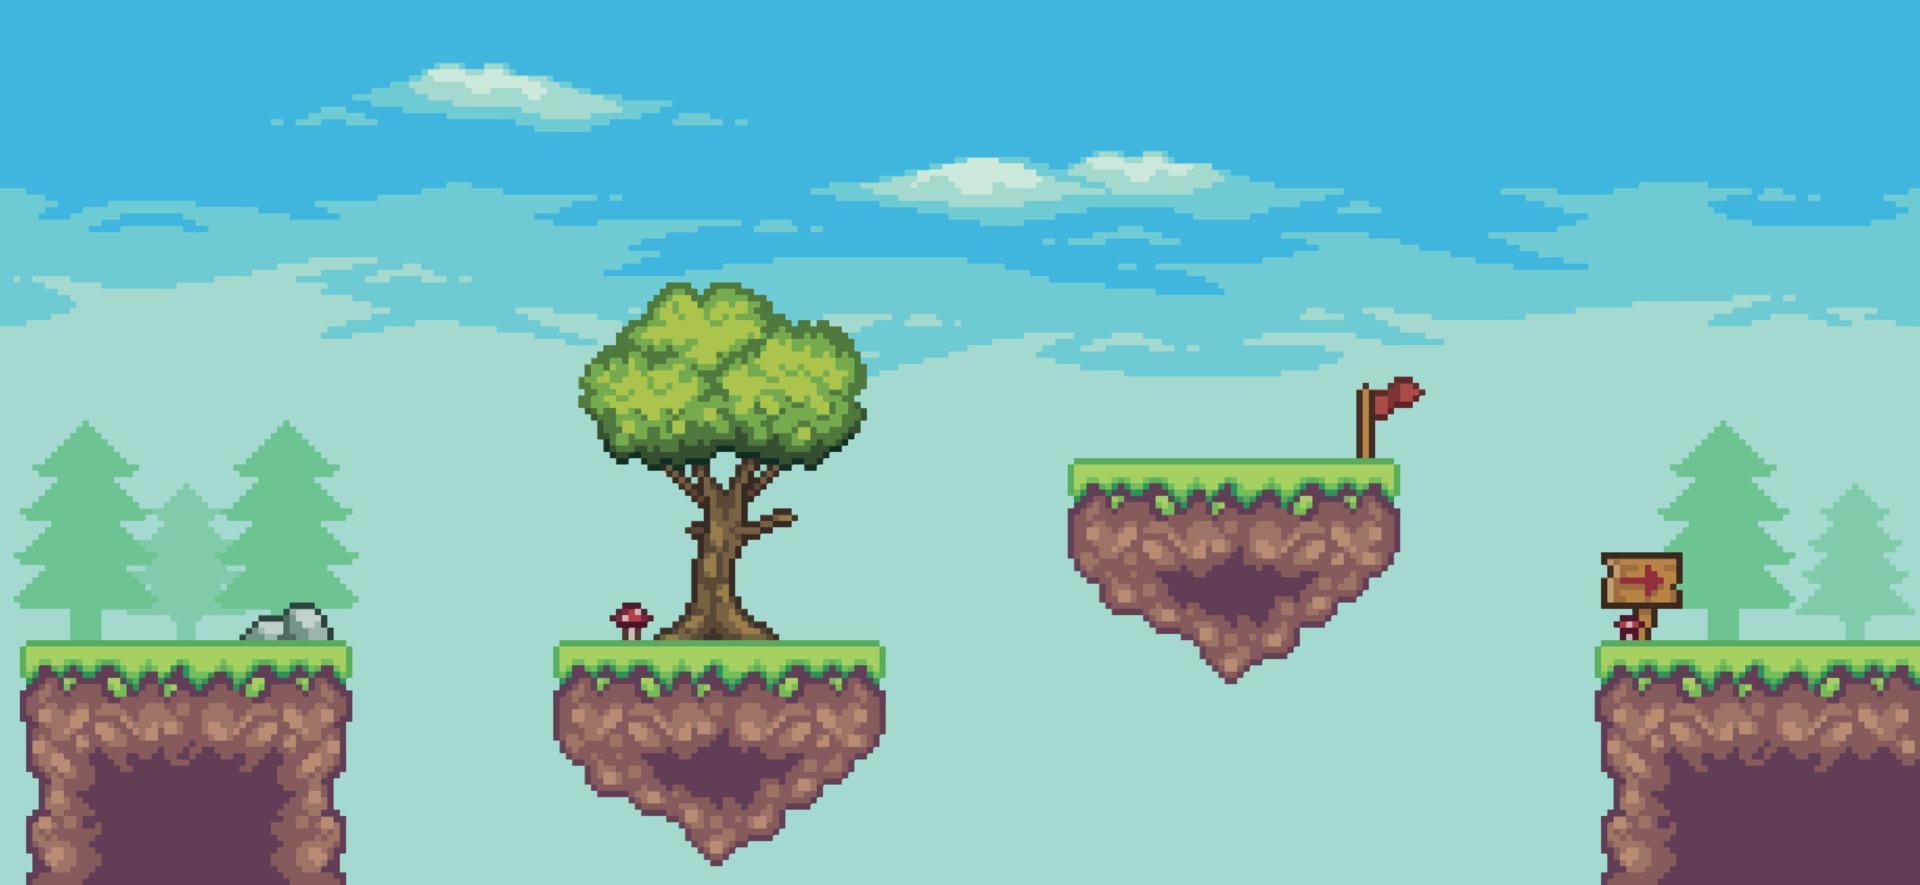 Pixel-Art-Arcade-Spielszene mit schwimmender Plattform, Bäumen, Wolken und Flaggen-8-Bit-Hintergrund vektor